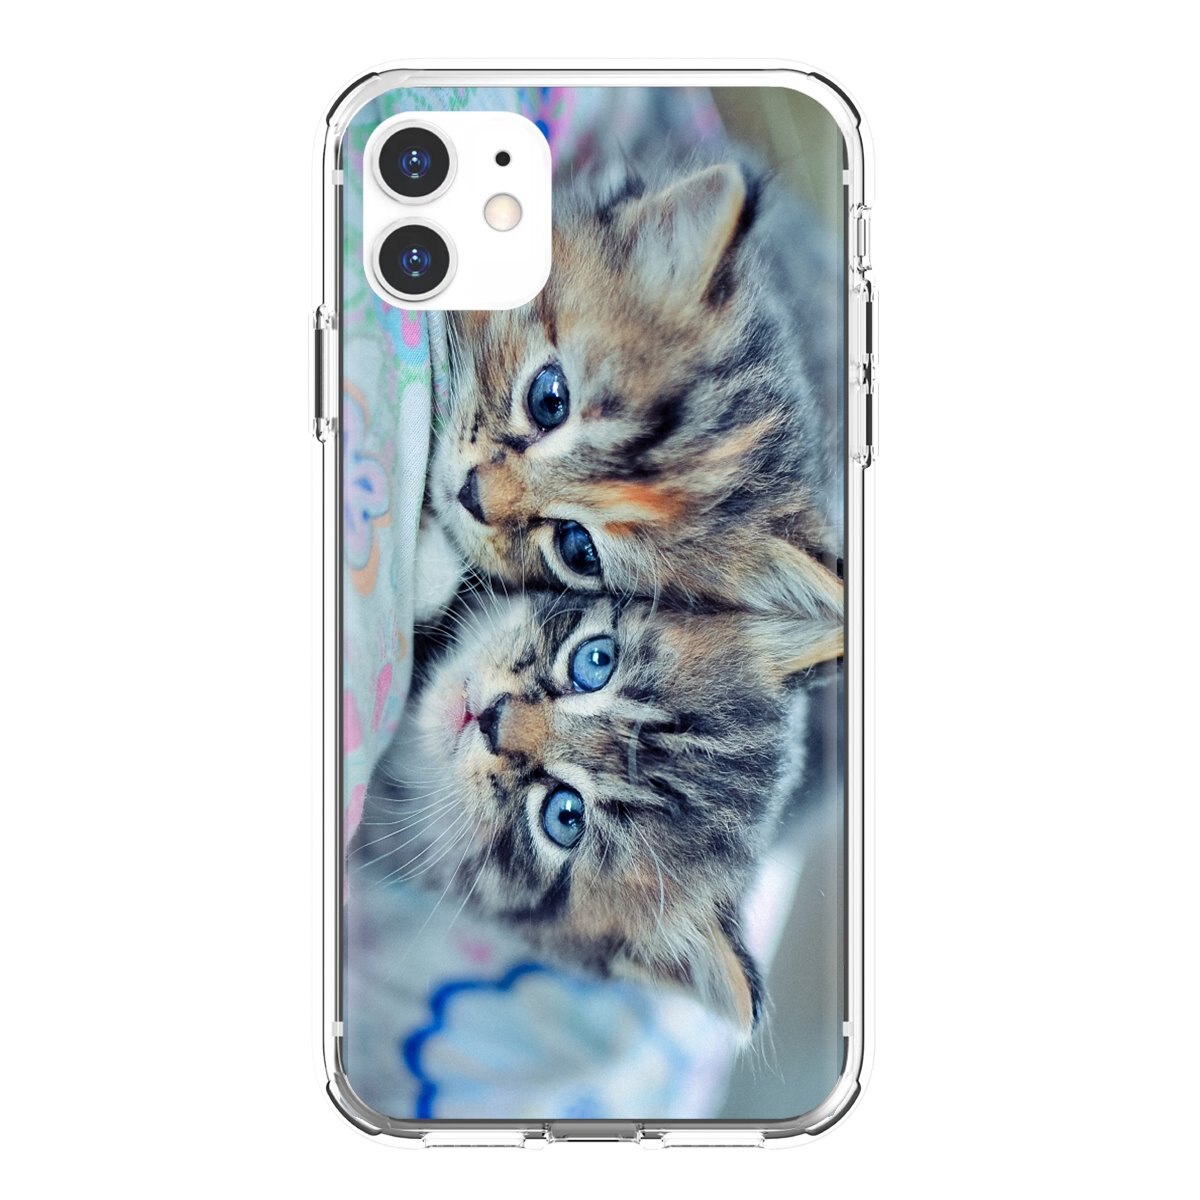 wallpaper untuk iphone 6,cat,felidae,kitten,small to medium sized cats,tabby cat